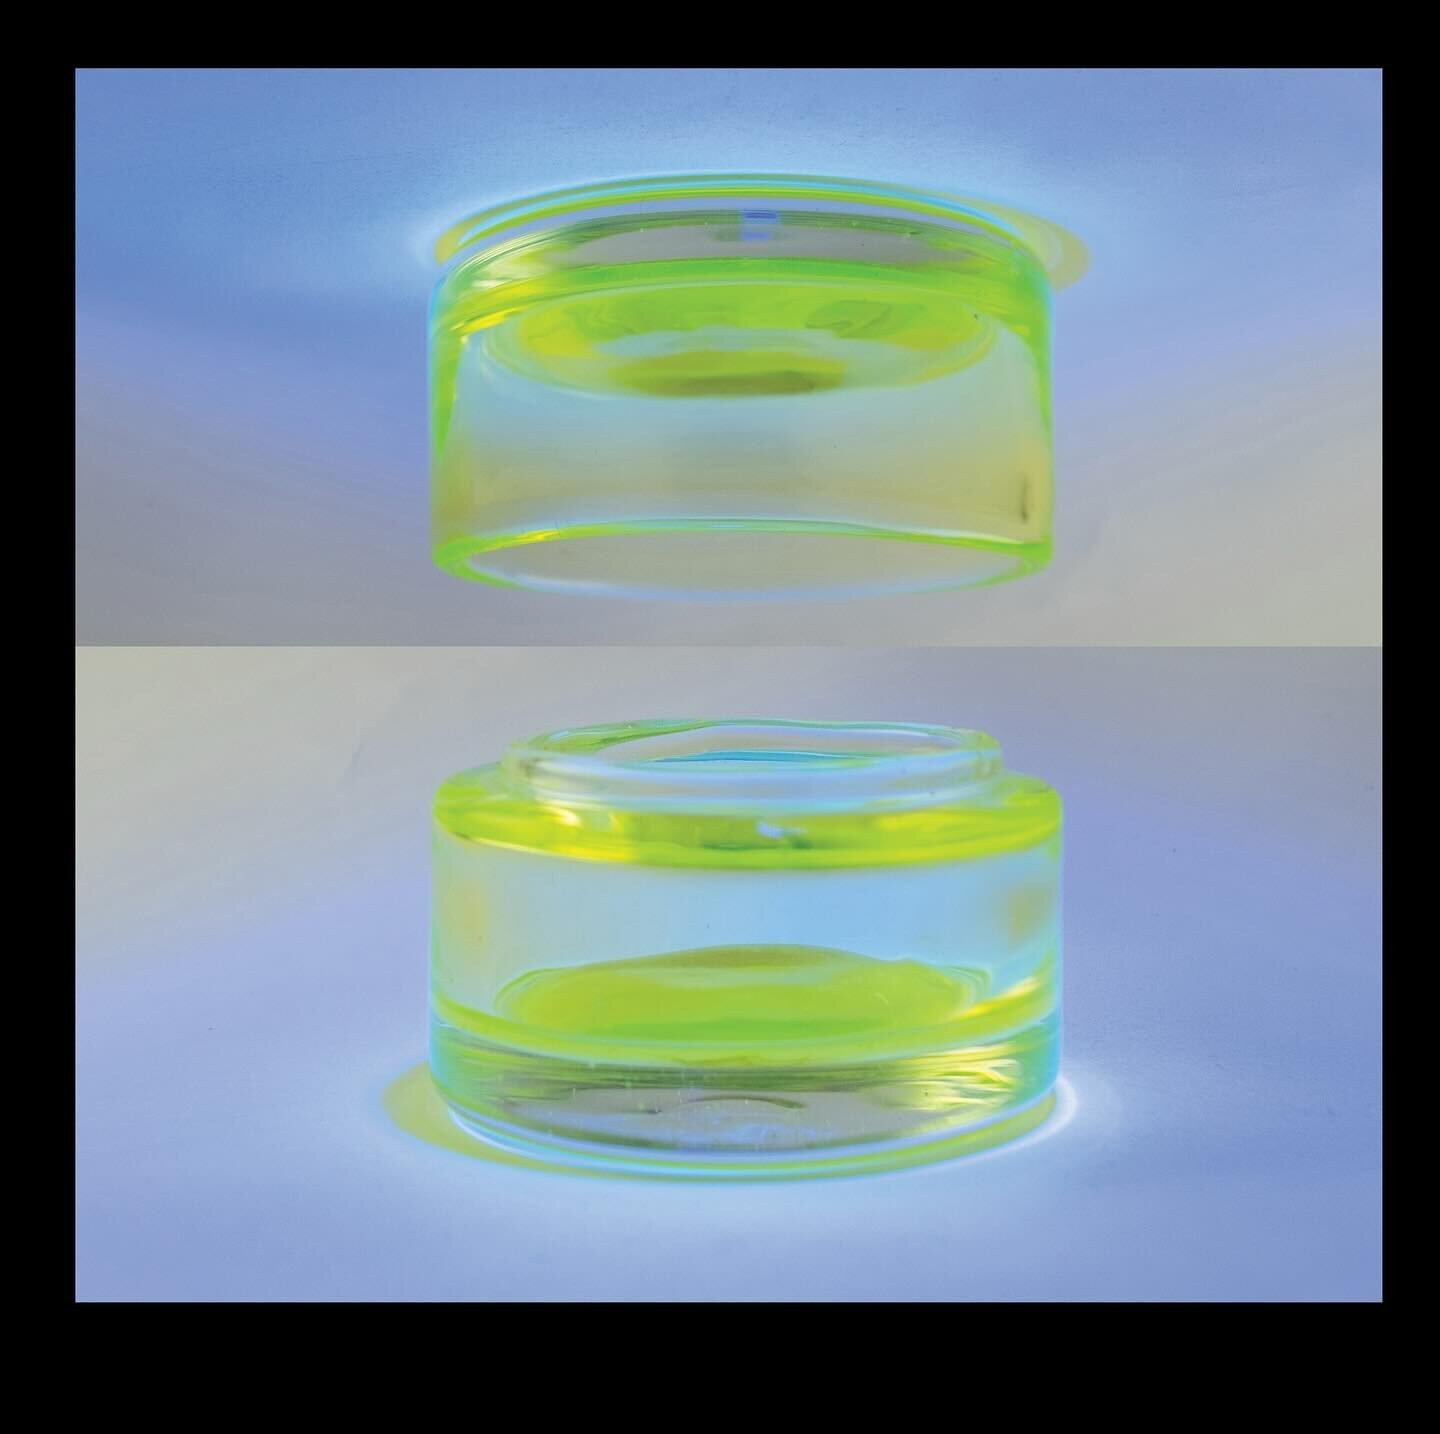 RADWASTE Containment Vessel
Borosilicate Uranium glass, 2.0 x 3.5&quot;